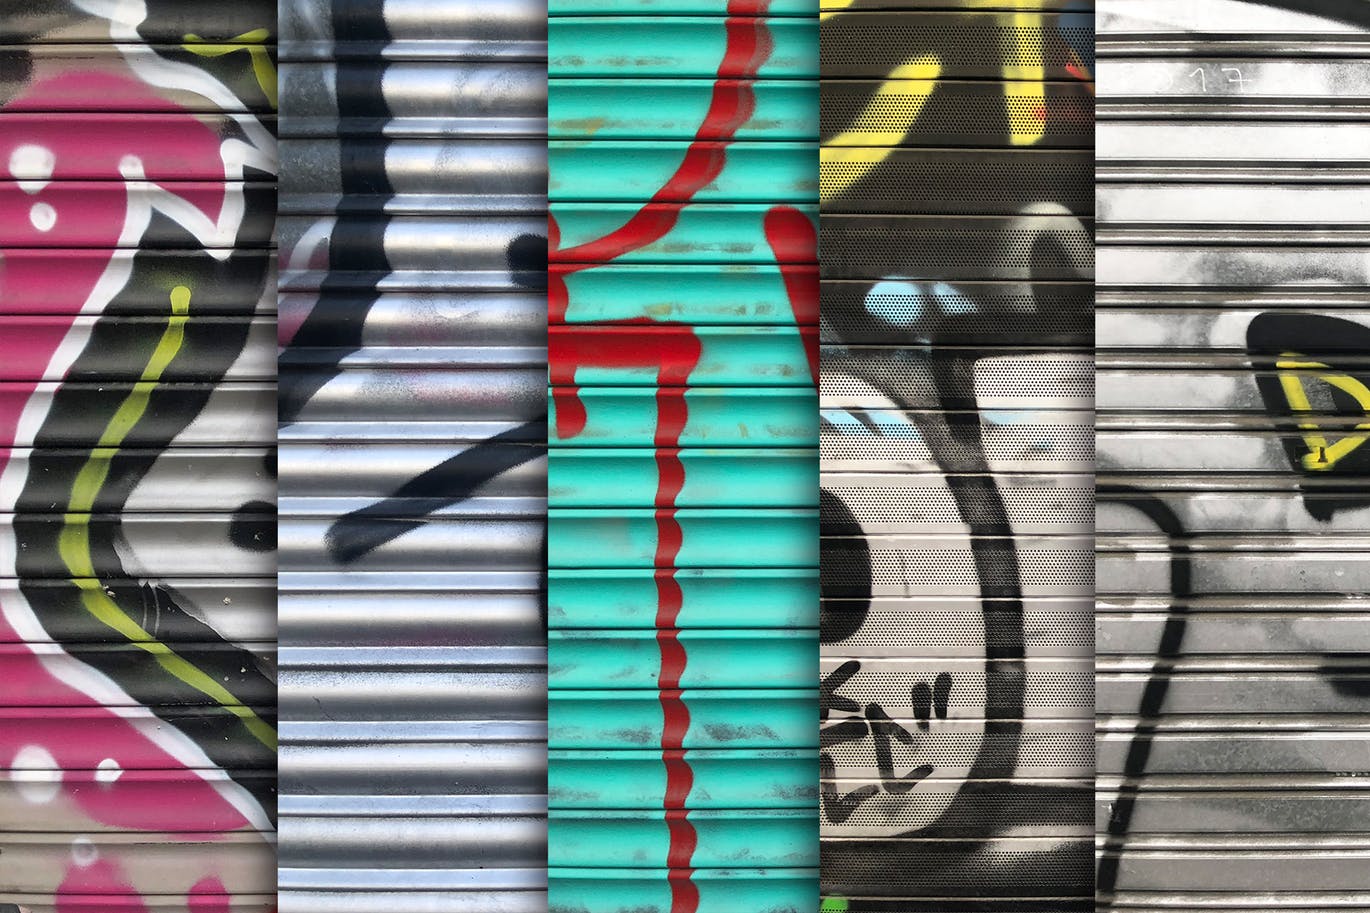 10张欧美风格车库门涂鸦纹理背景图素材 Garage Door Graffiti Textures x10插图1